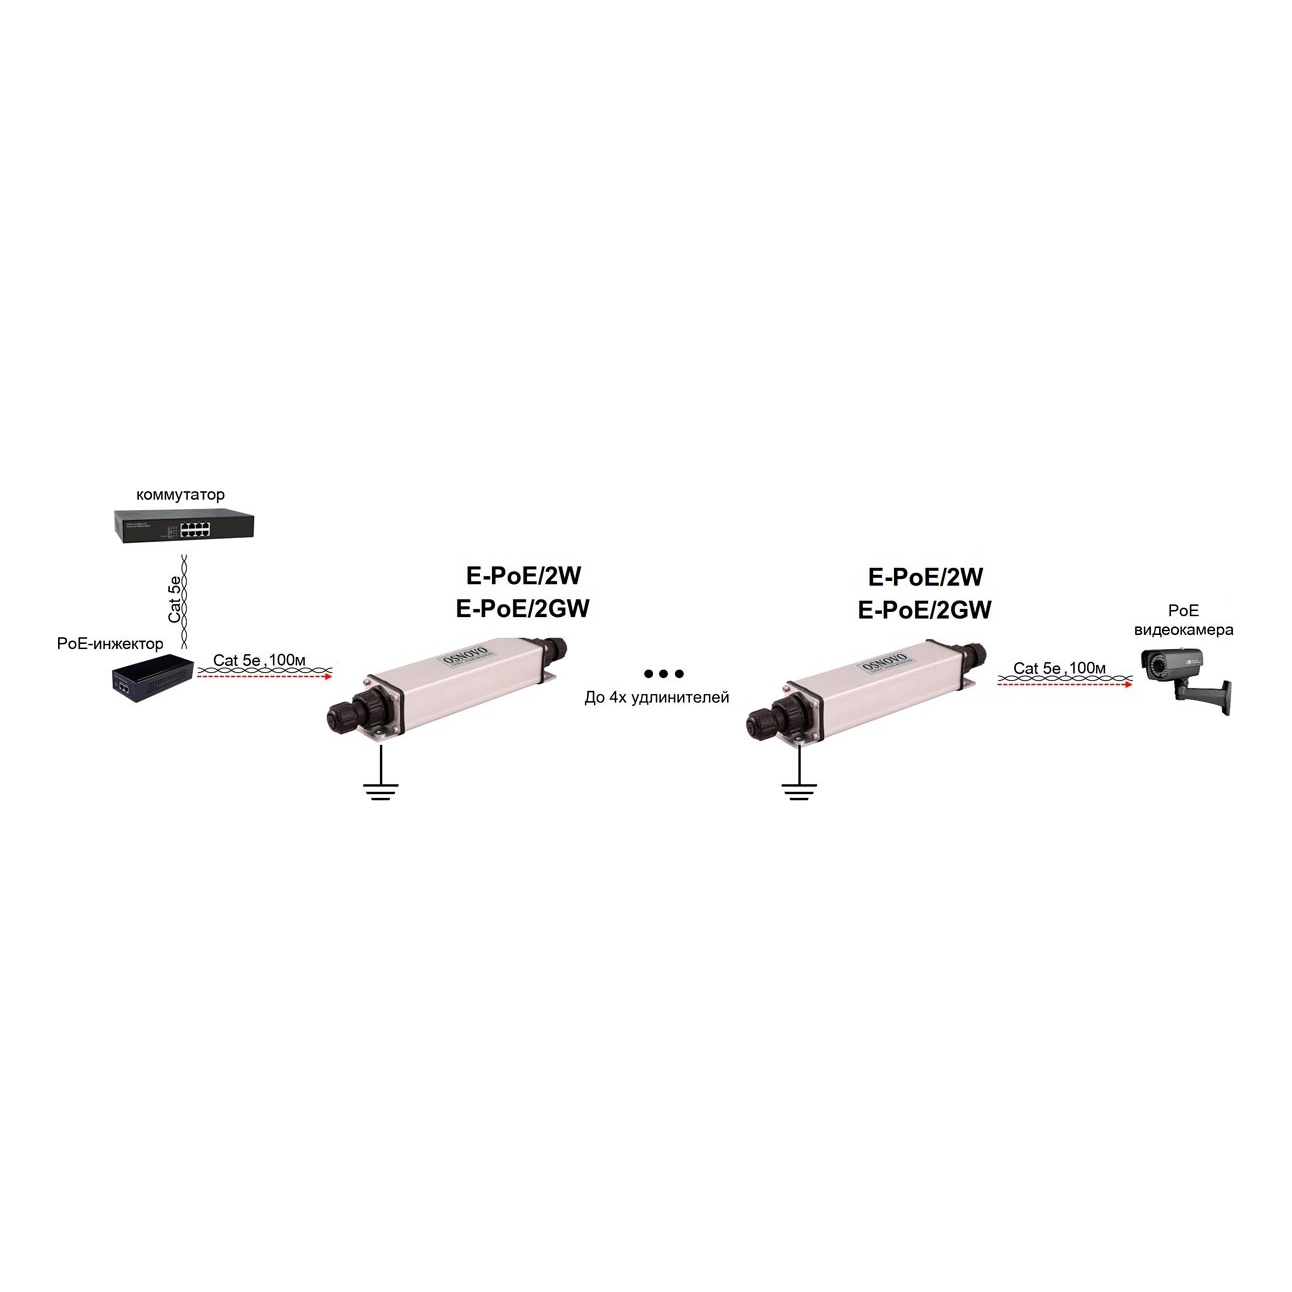 OSNOVO E-PoE/2GW E-PoE/2GW Уличный PoE удлинитель 10/100/1000M Gigabit Ethernet до 500м (до 22W) со встроенной грозозащитой 6kV